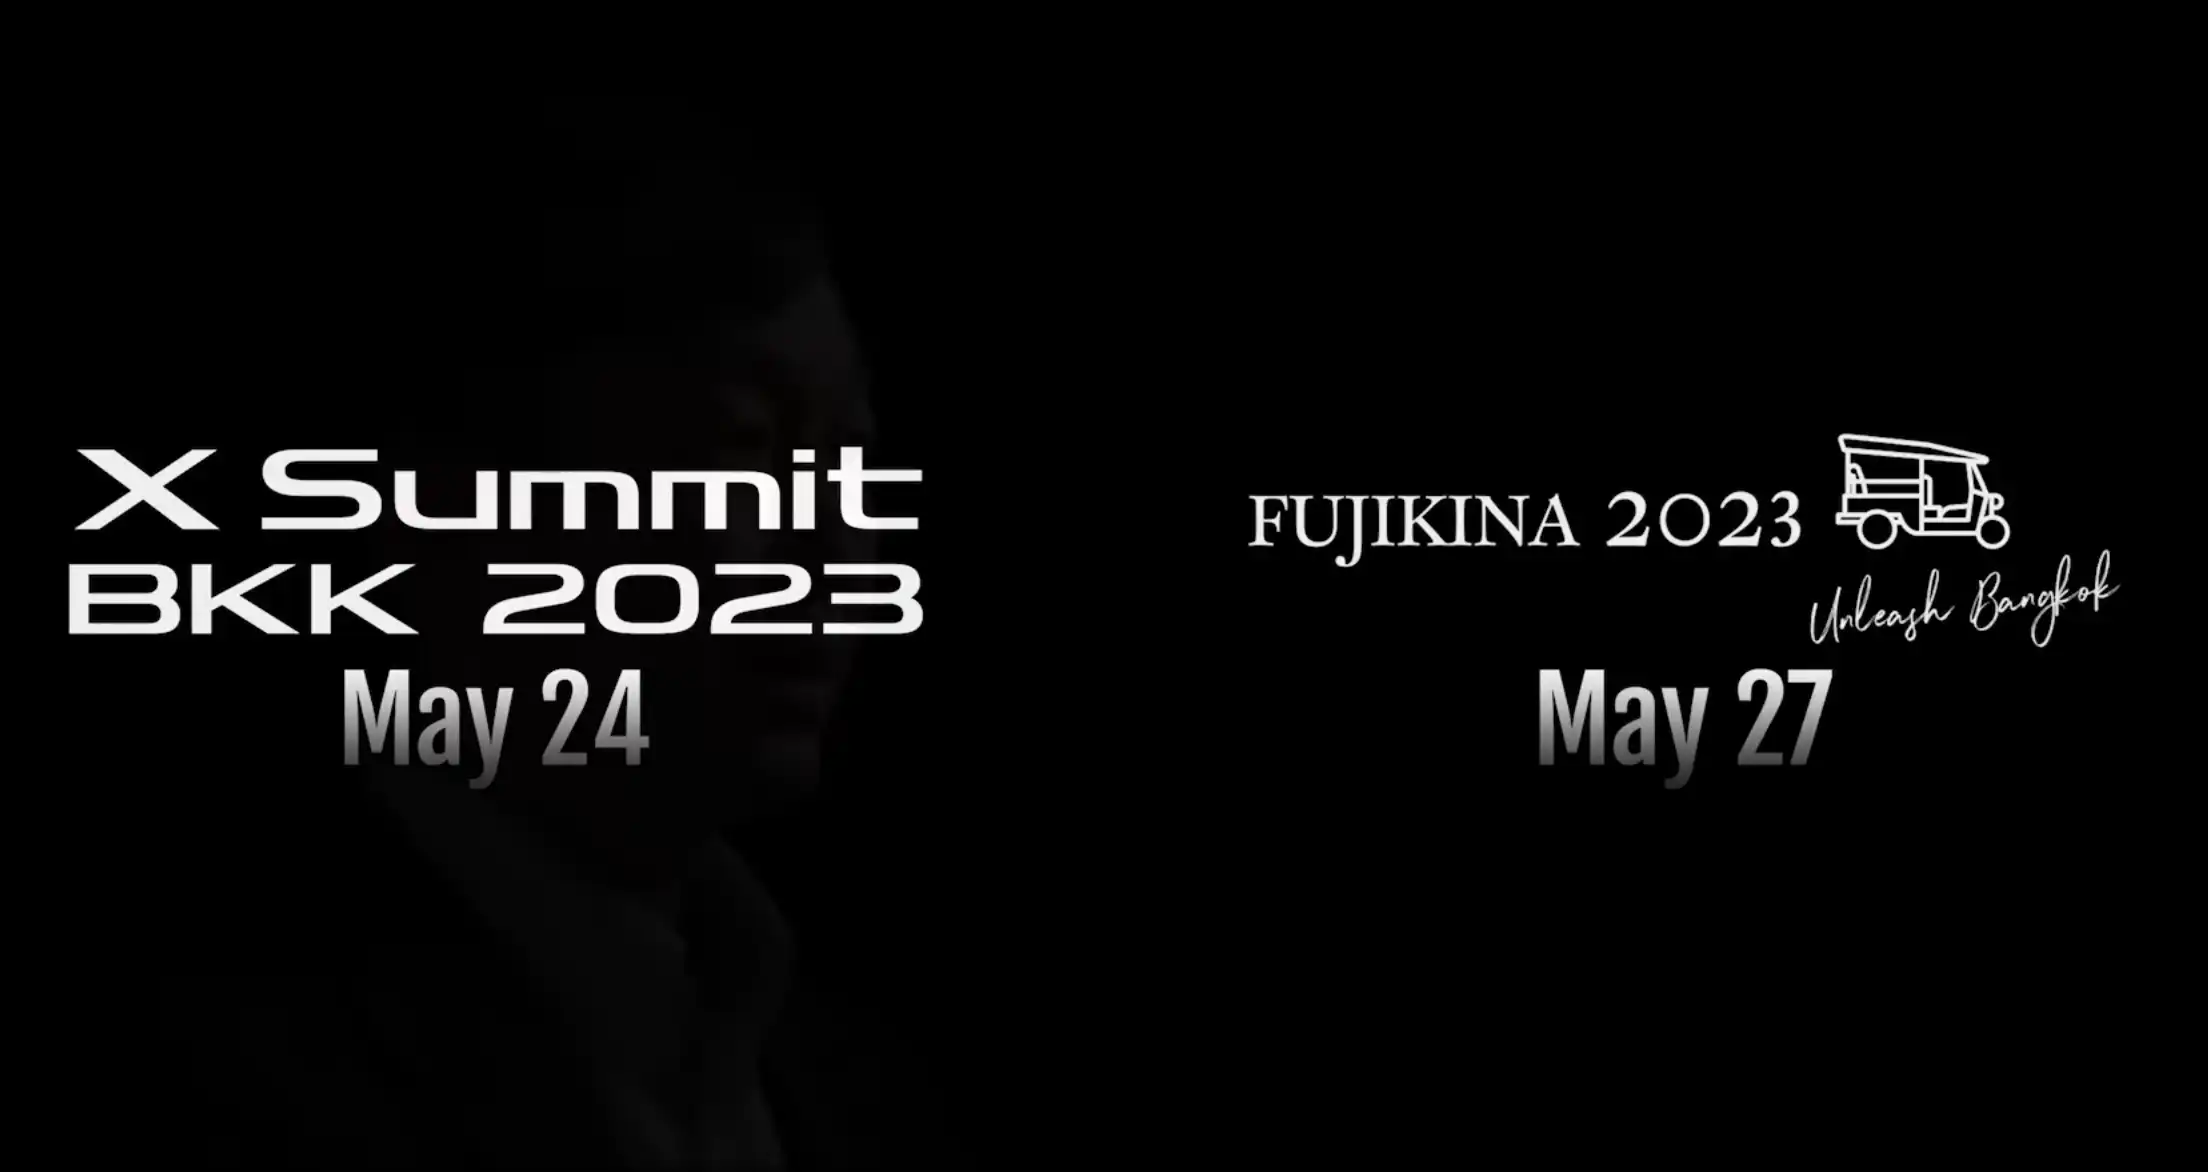 Fujifilm X Summit Bangkok Will Be Held on May 24th and Fujikina May 27th -